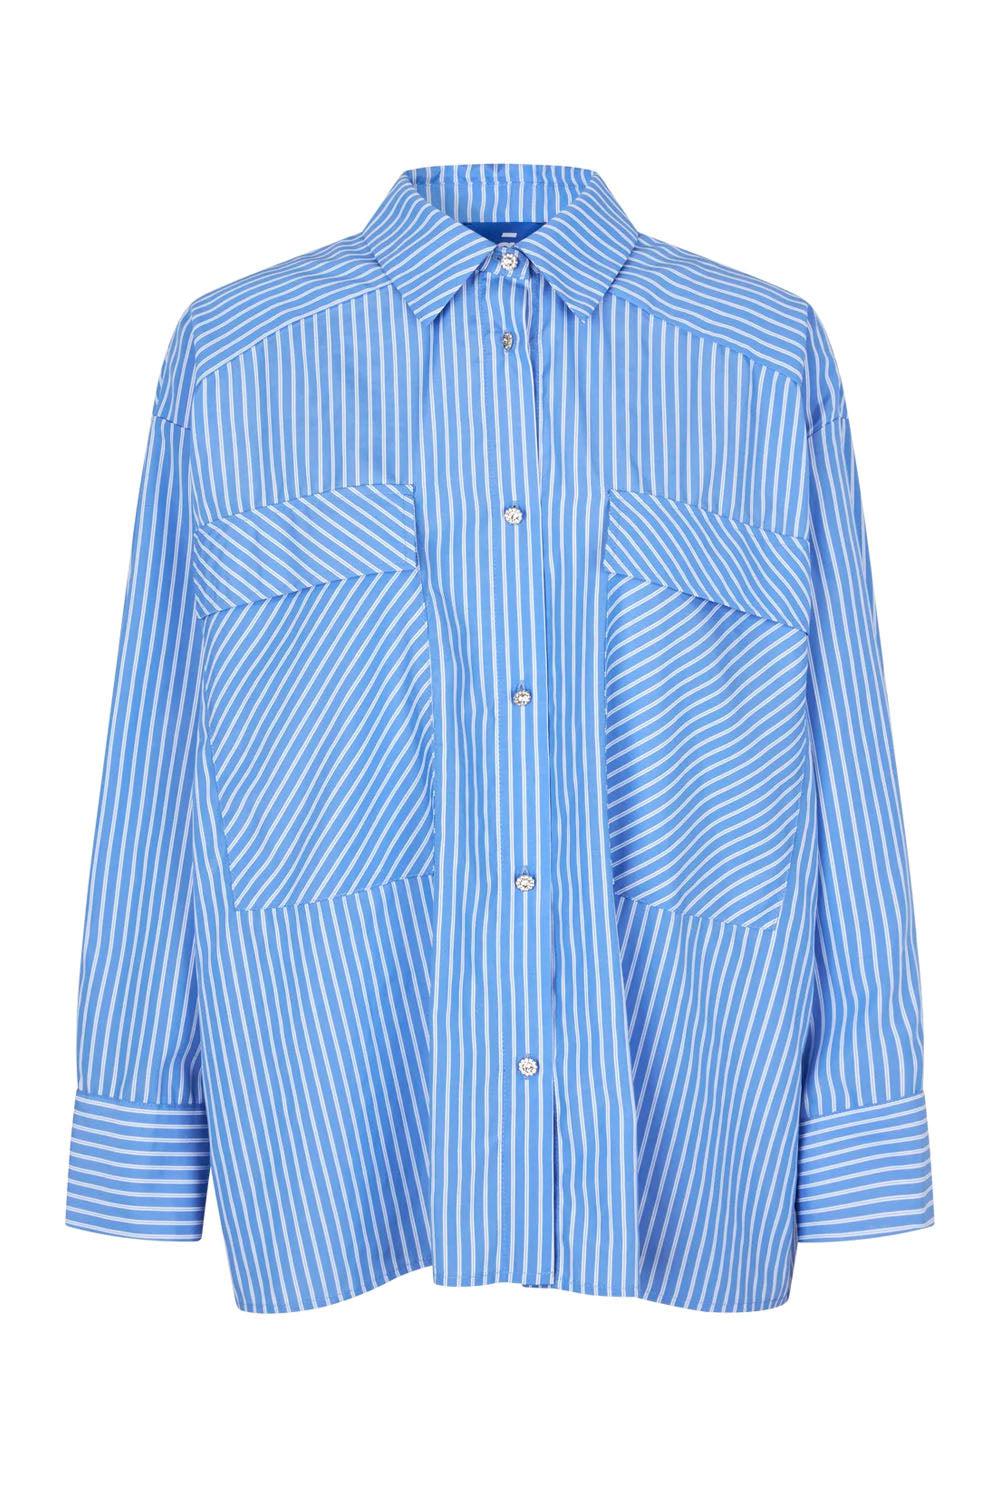 Officecras Shirt Blue stripe